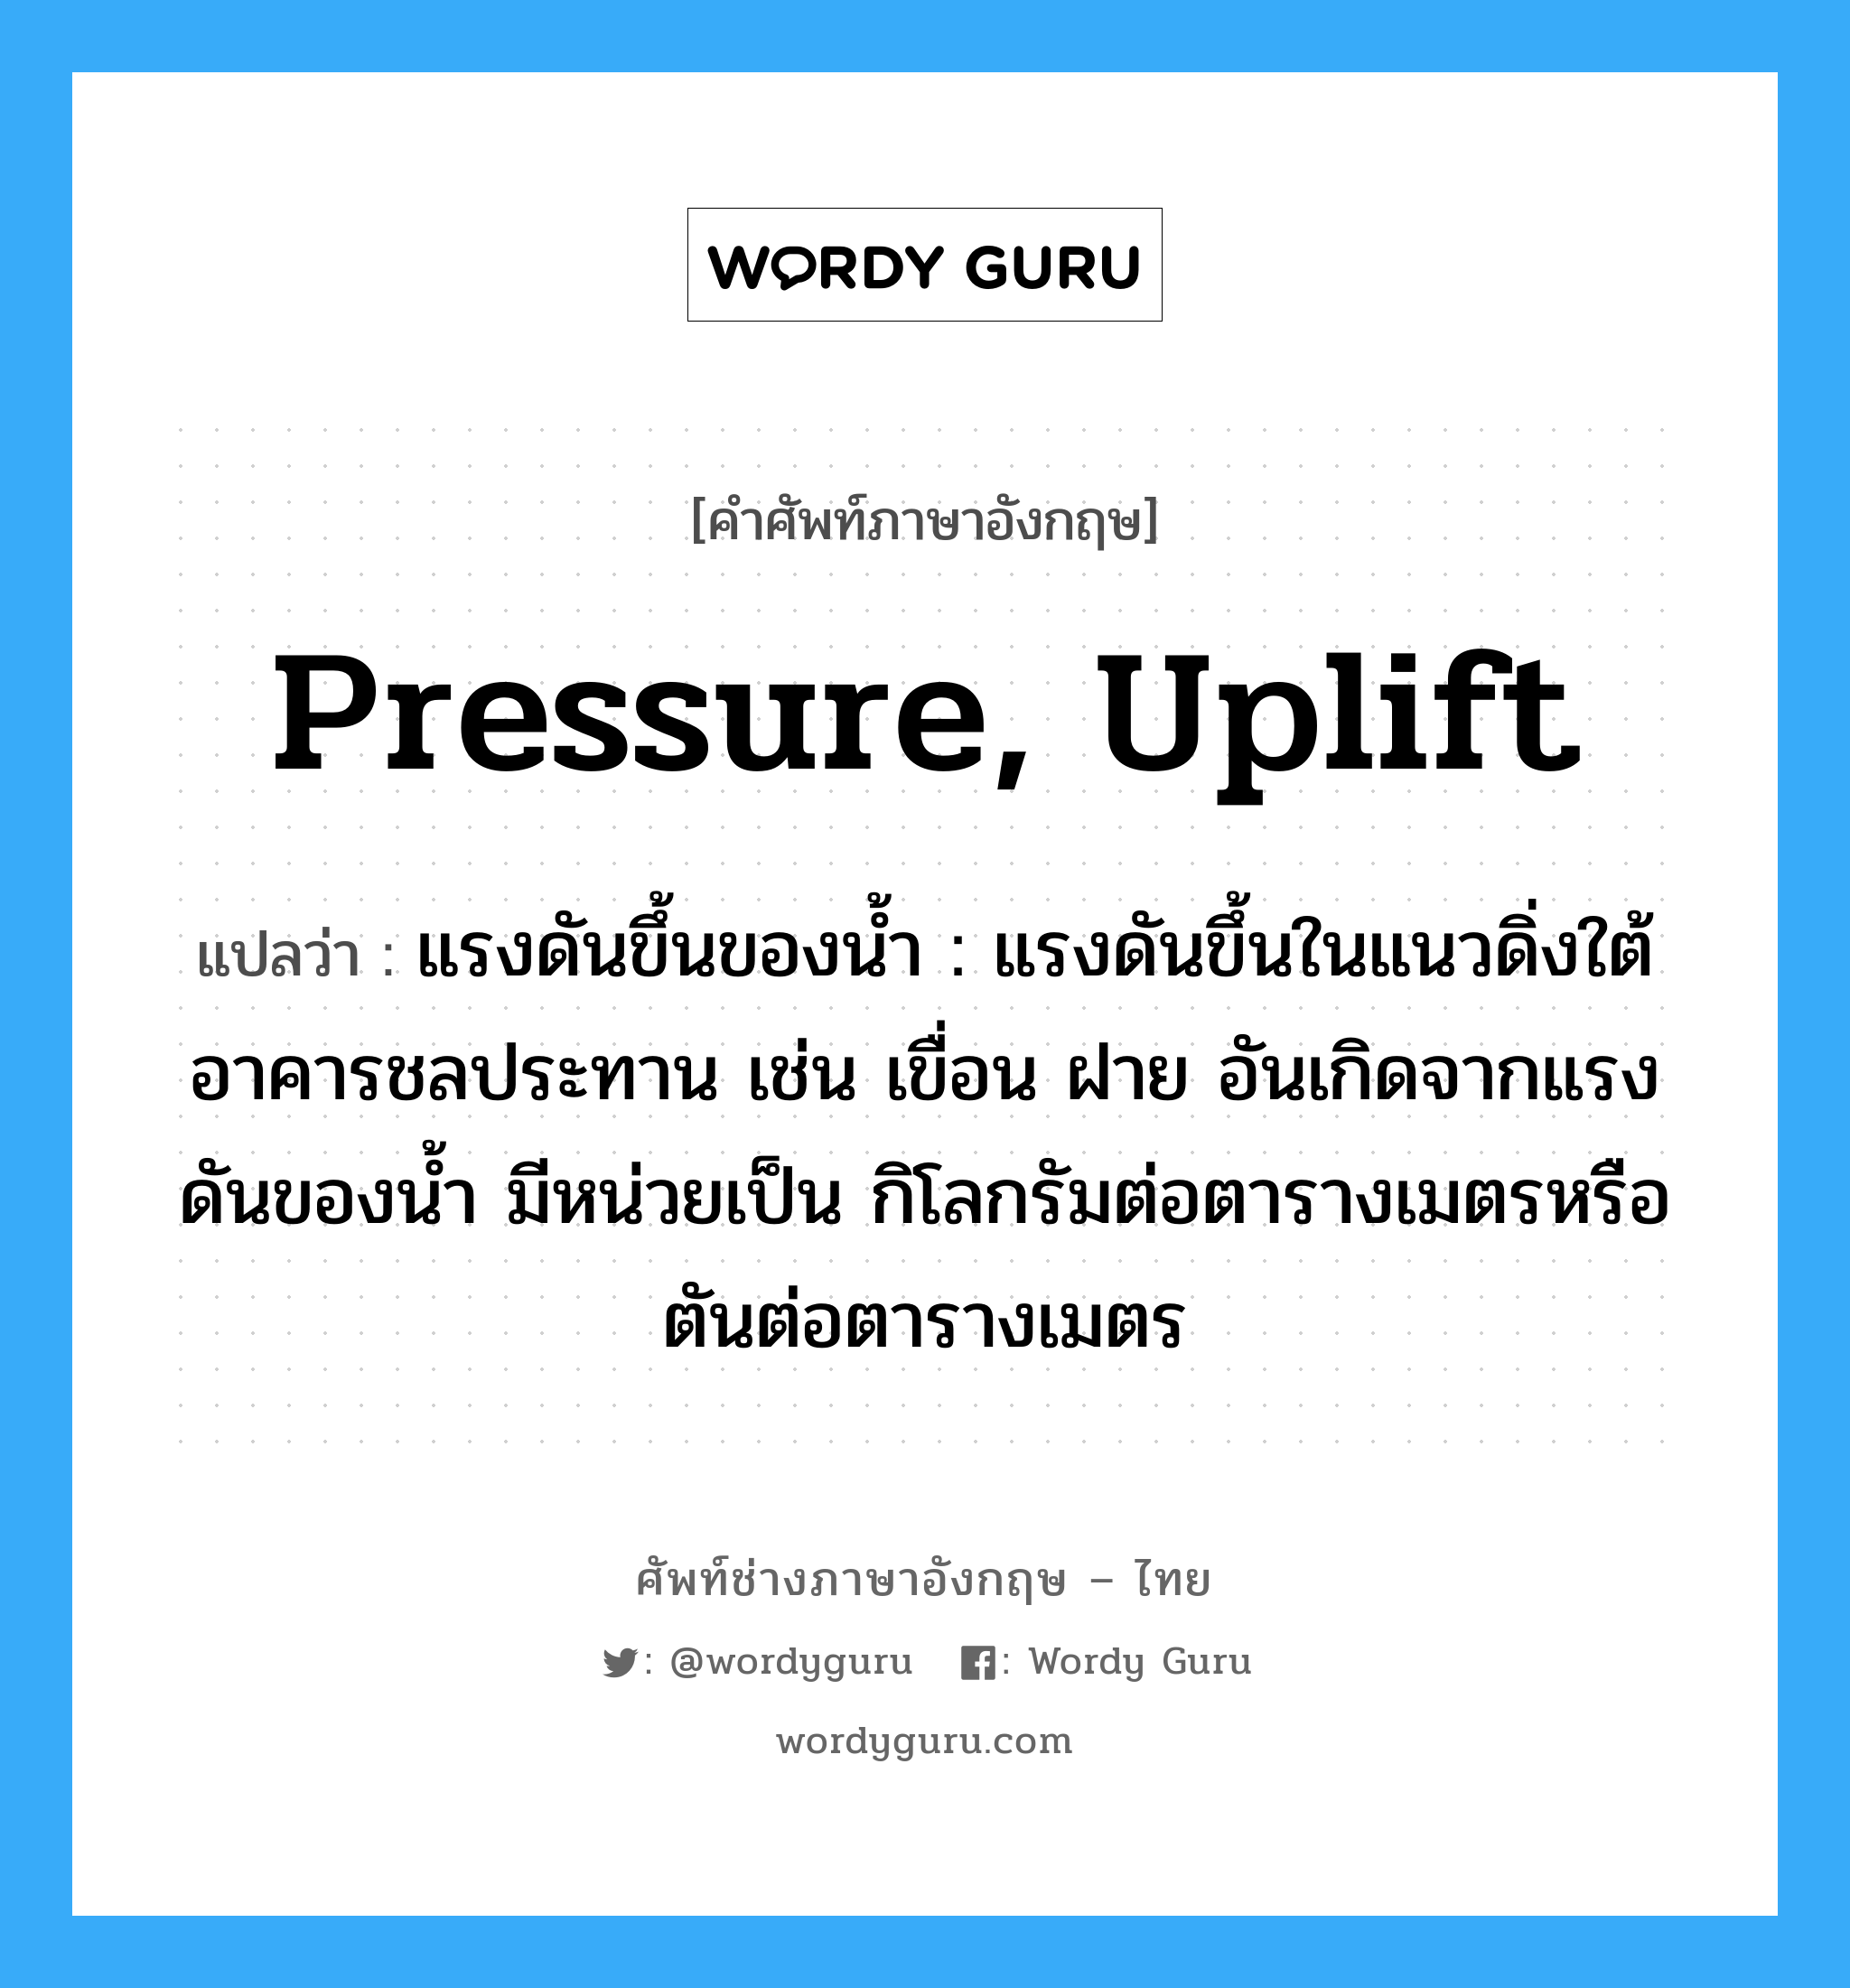 pressure, uplift แปลว่า?, คำศัพท์ช่างภาษาอังกฤษ - ไทย pressure, uplift คำศัพท์ภาษาอังกฤษ pressure, uplift แปลว่า แรงดันขึ้นของน้ำ : แรงดันขึ้นในแนวดิ่งใต้อาคารชลประทาน เช่น เขื่อน ฝาย อันเกิดจากแรงดันของน้ำ มีหน่วยเป็น กิโลกรัมต่อตารางเมตรหรือตันต่อตารางเมตร